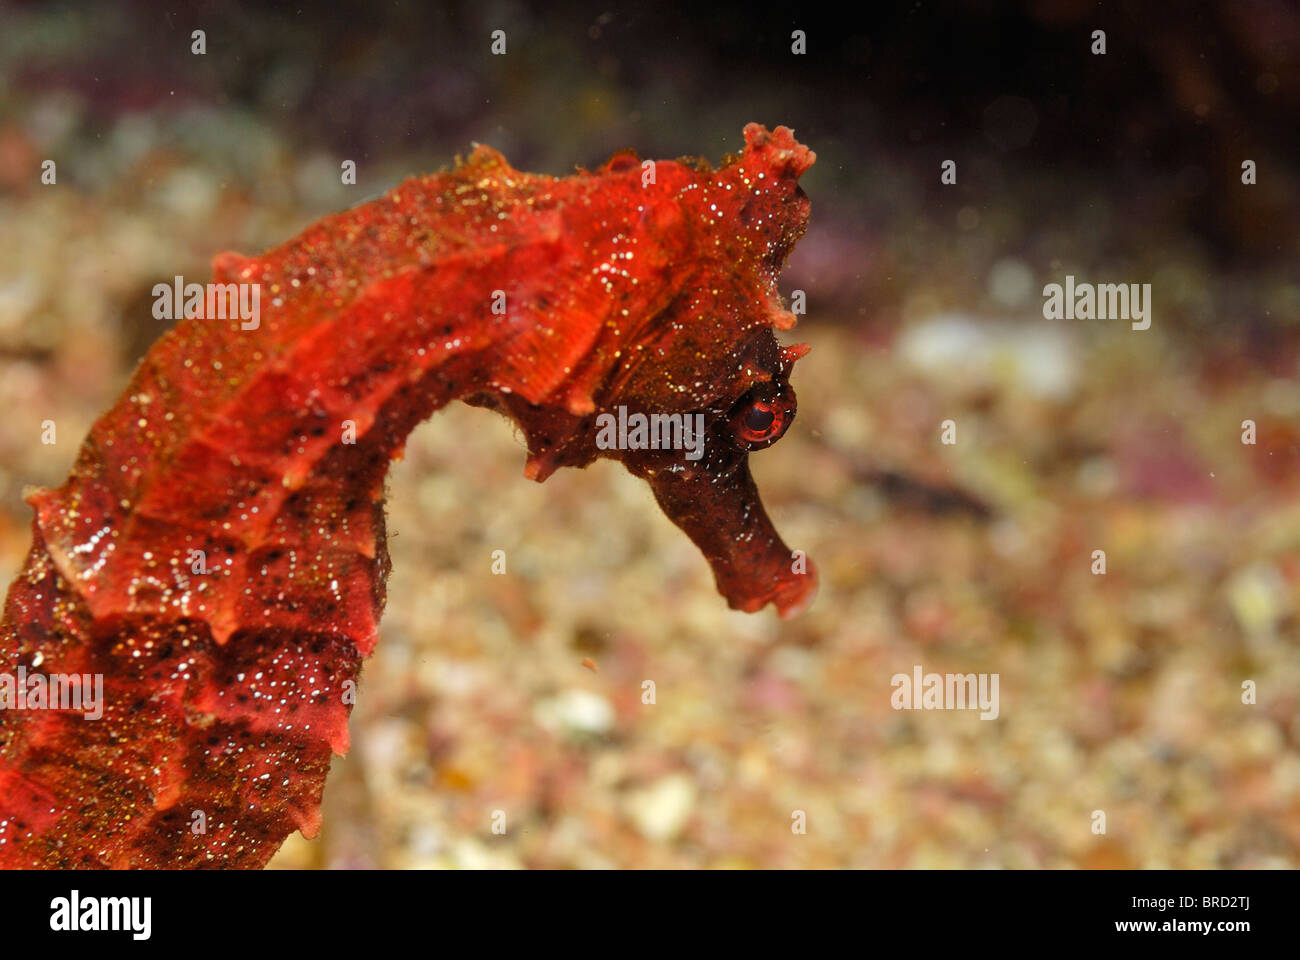 Close up of Red Pacifique" (Hippocampus ingens), vue sous-marine, au large de l'archipel des îles Galapagos, Equateur Banque D'Images